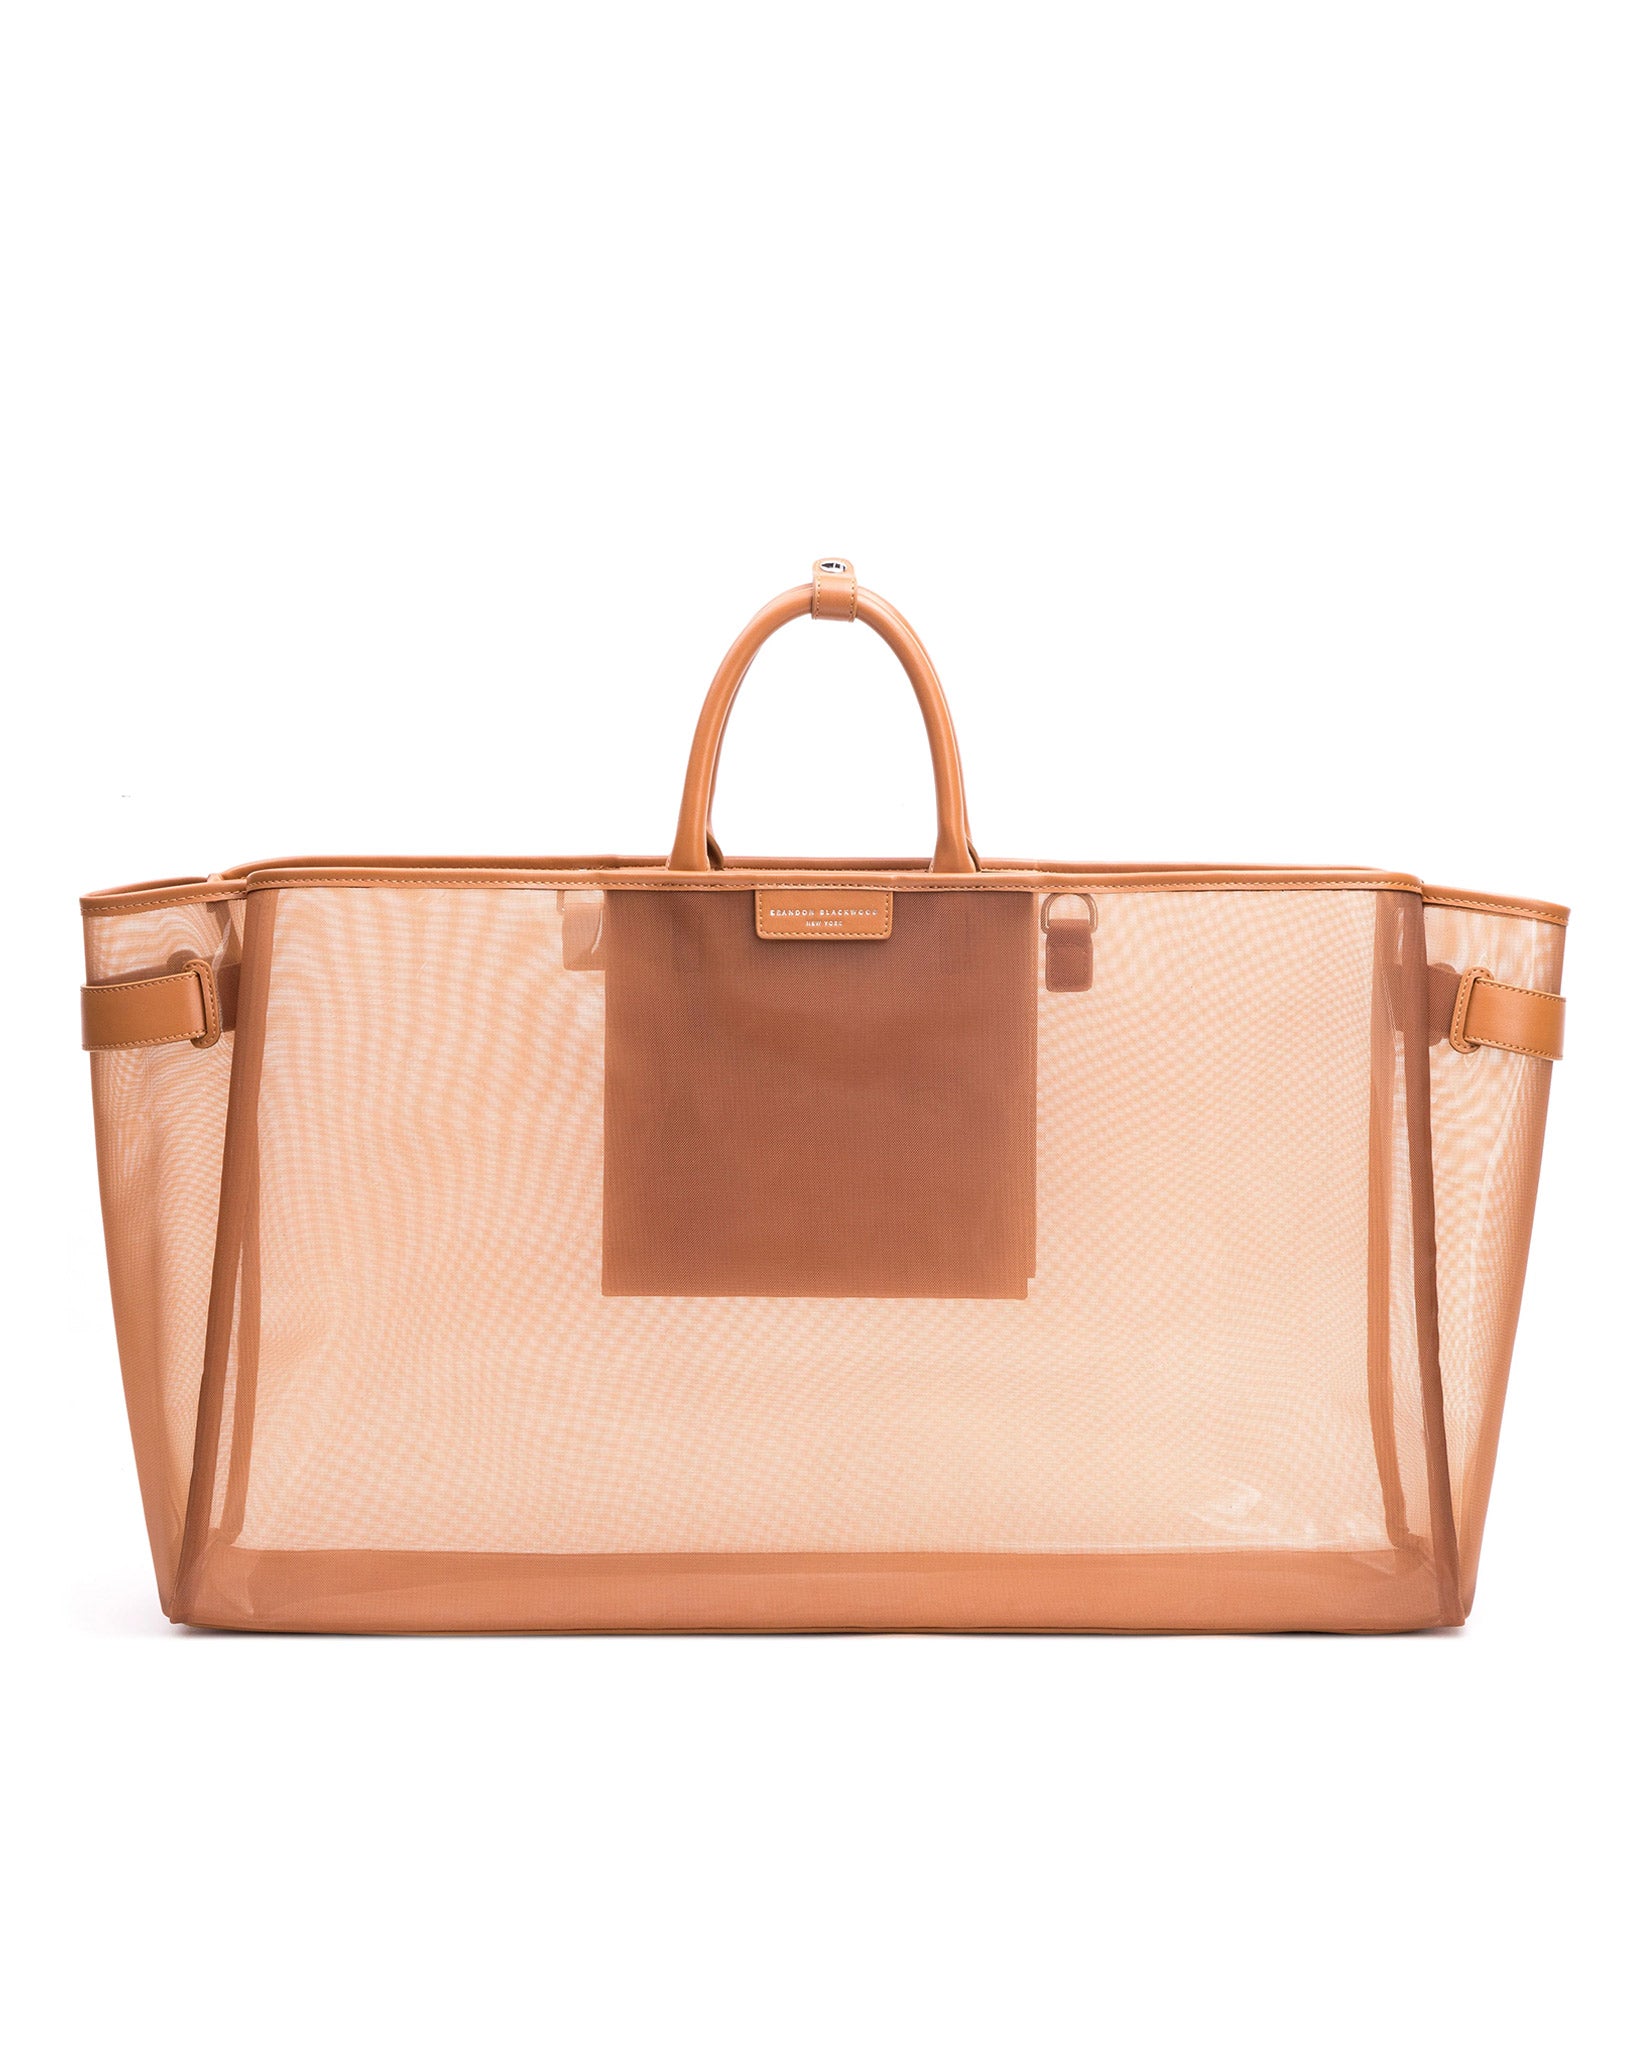 Louis Vuitton, Bags, Louis Vuitton Foundation Plastic Bag